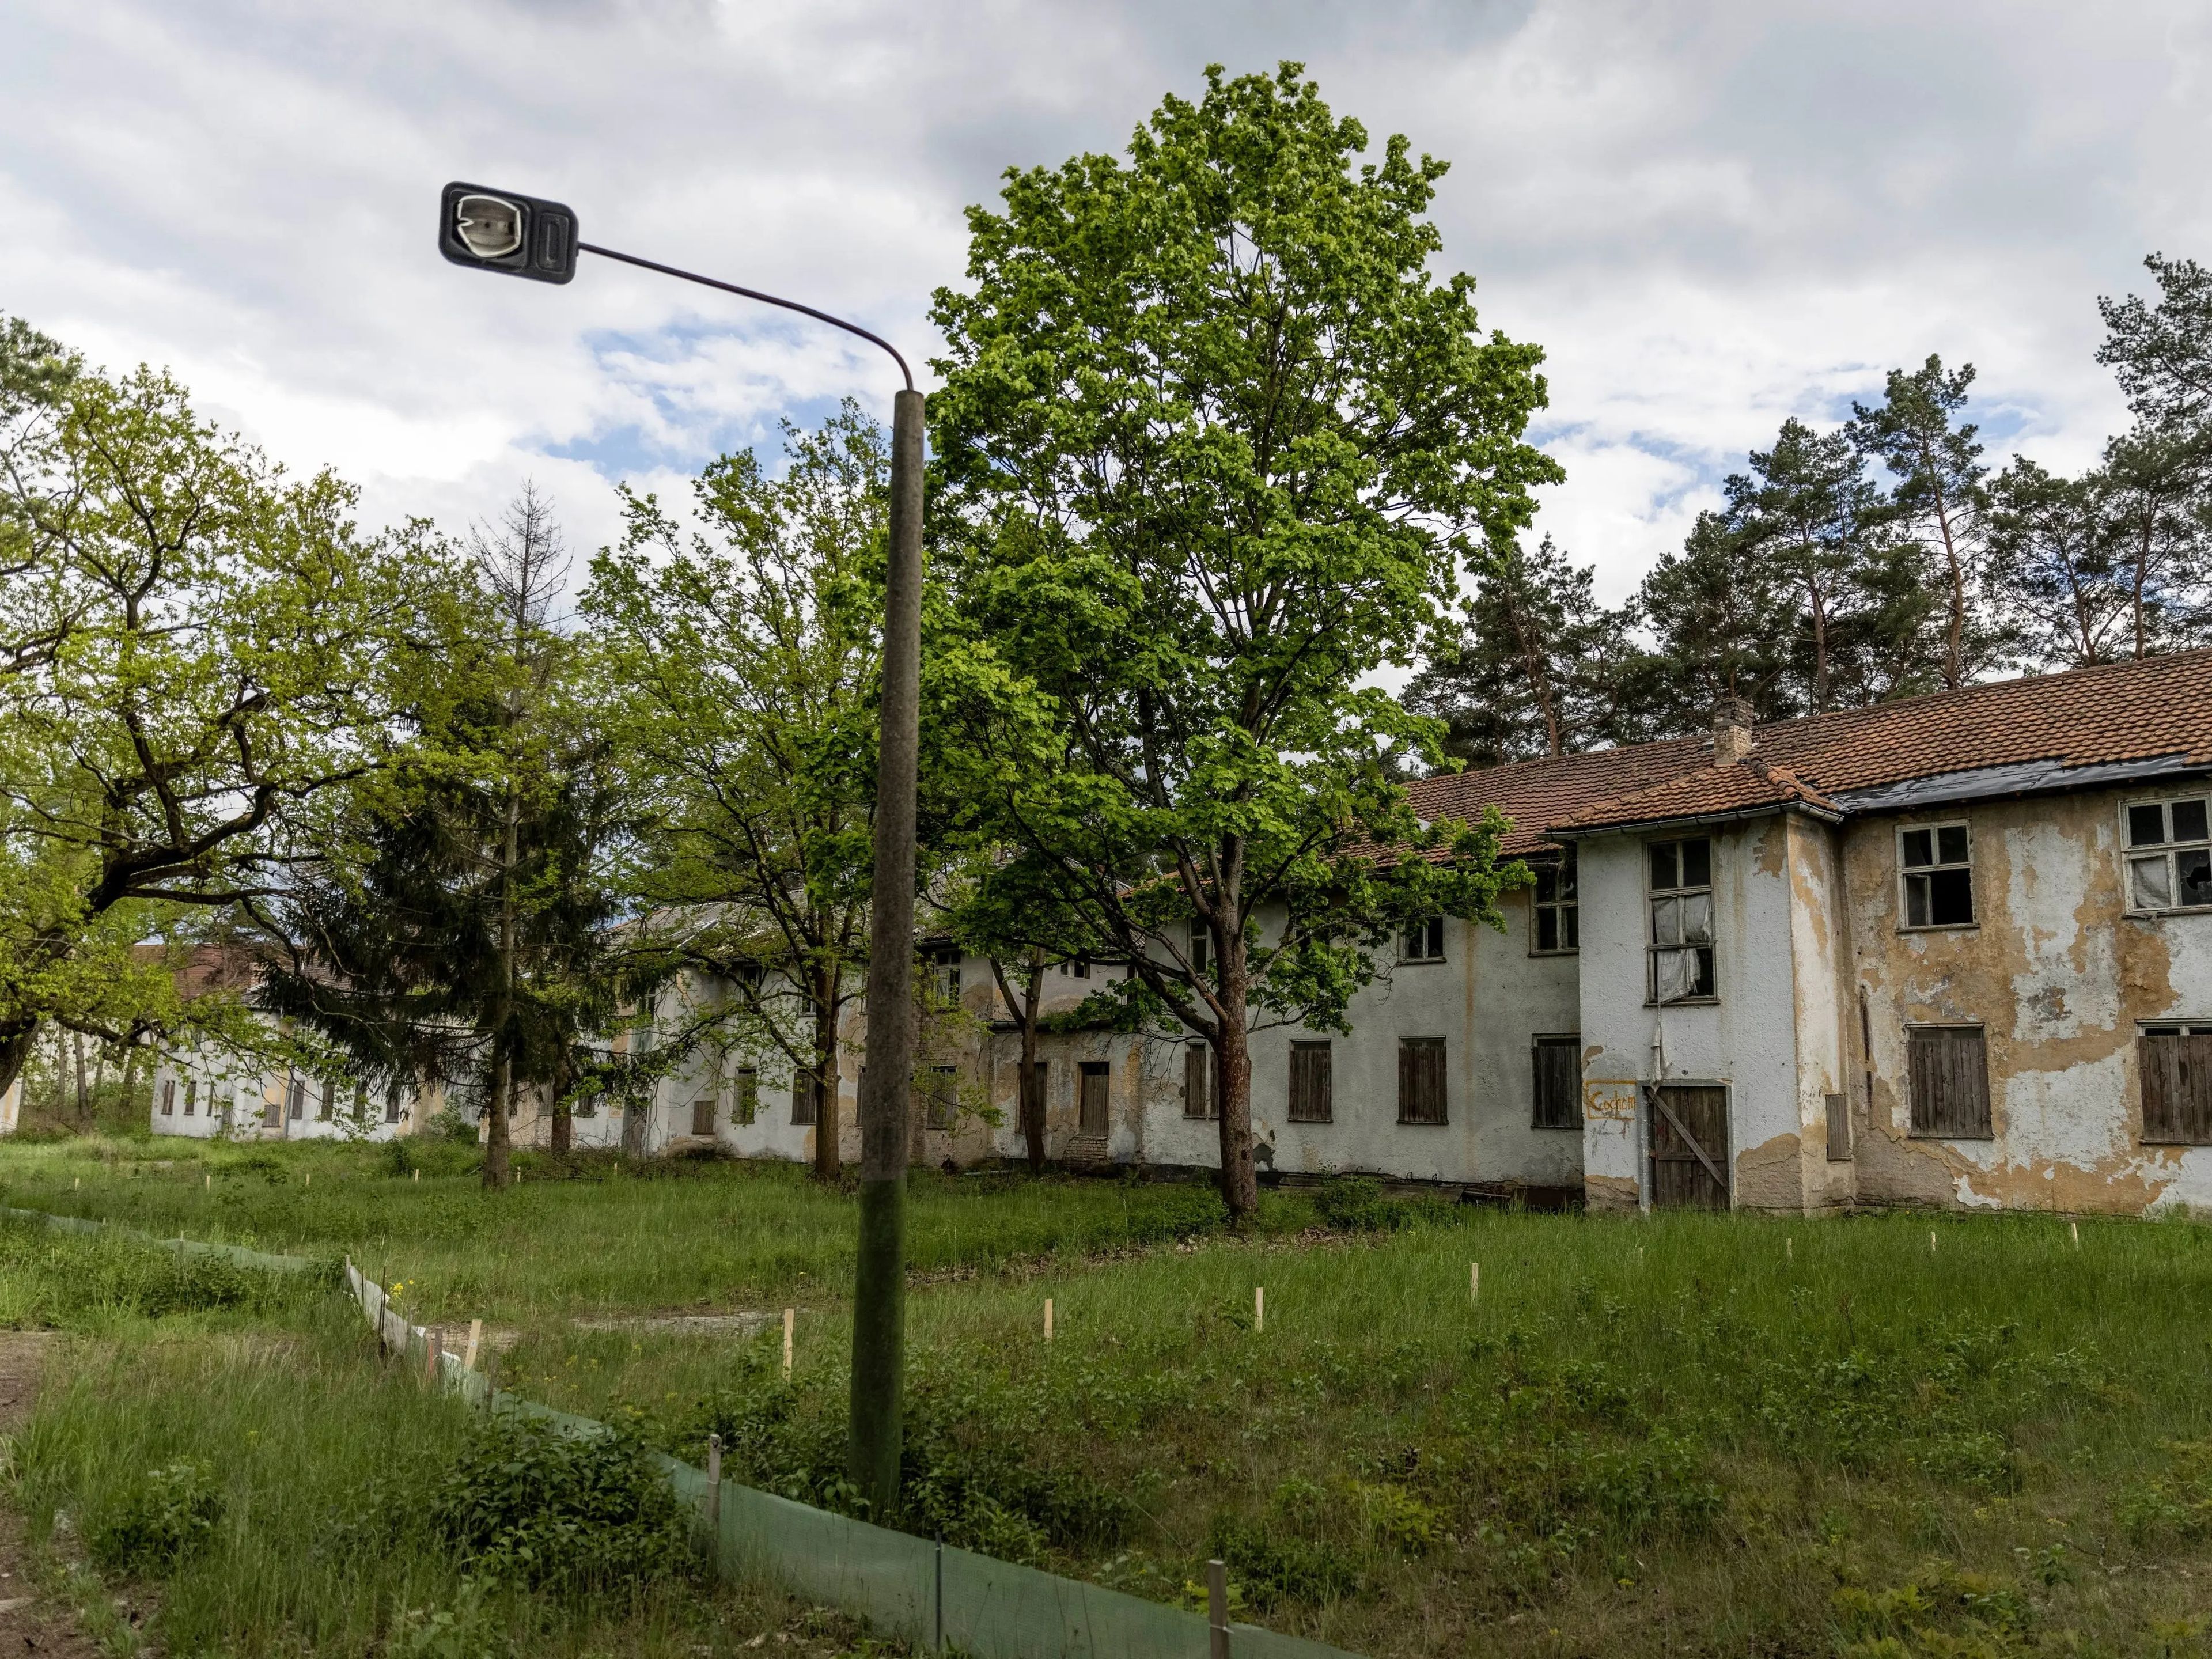 Estas son las casas abandonadas originales para atletas marcadas con los nombres de sus complejos de viviendas en la Villa Olímpica de Berlín de 1936, el 17 de mayo de 2021.